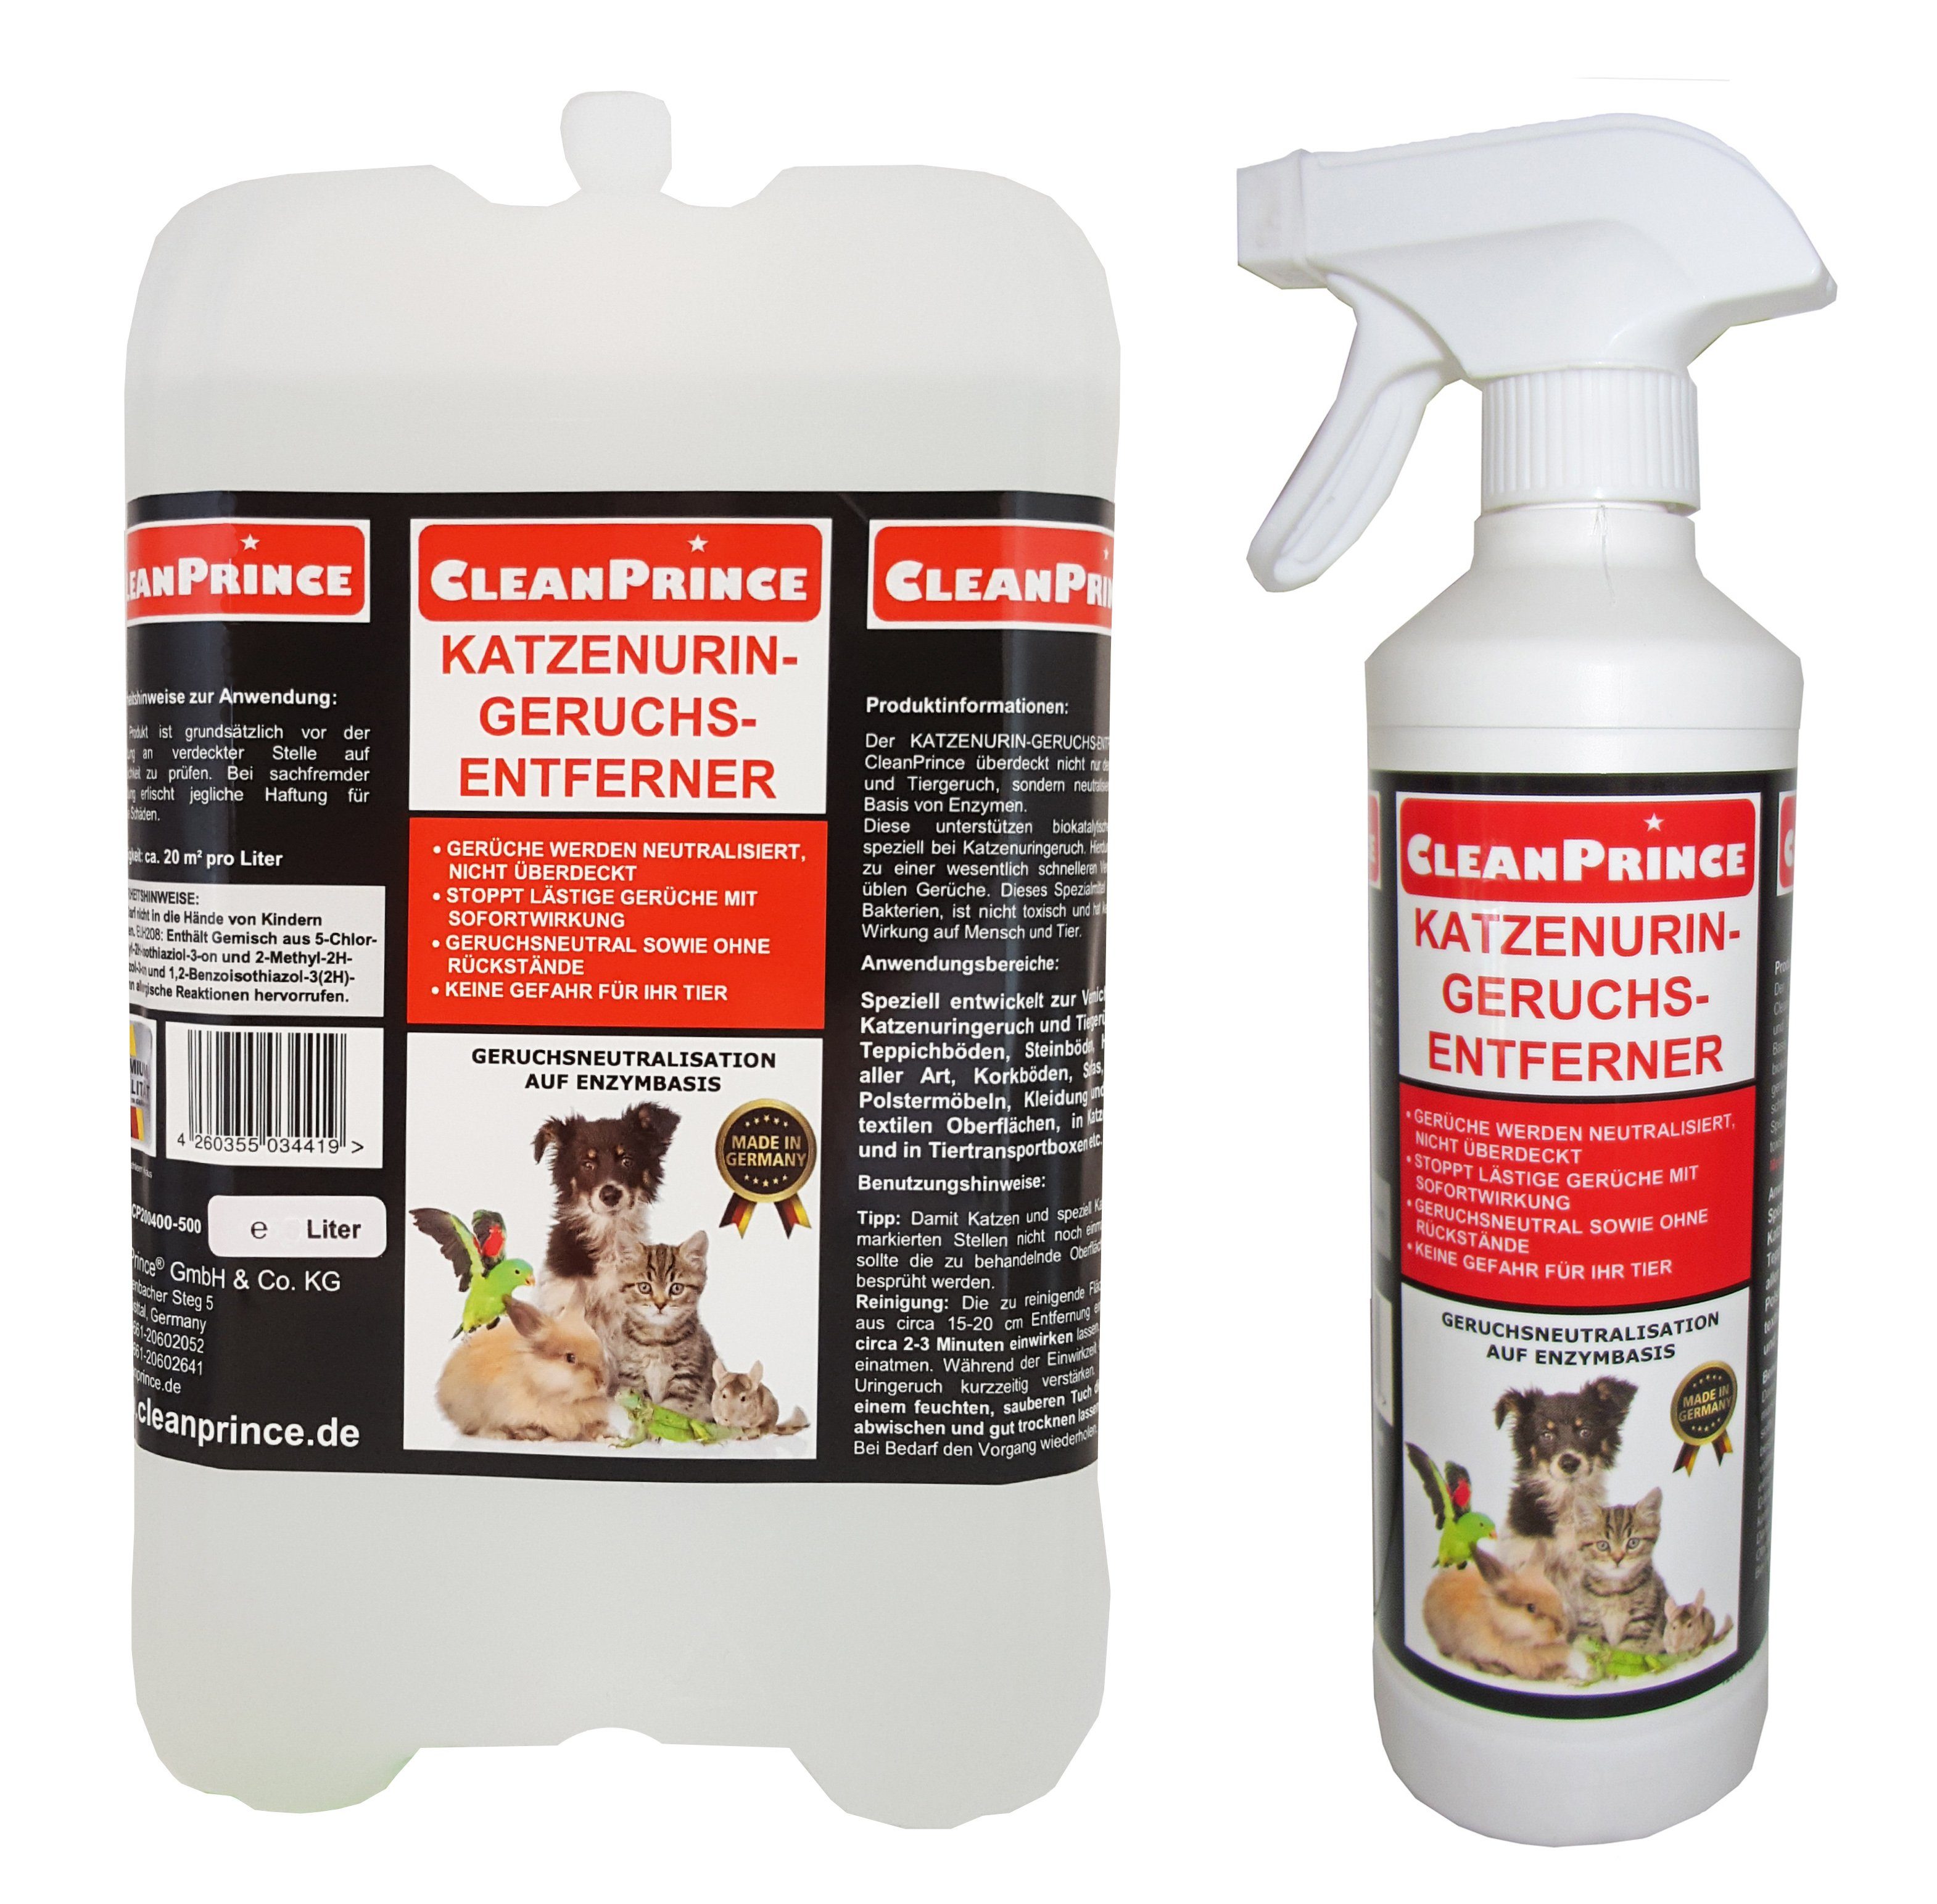 CleanPrince Raumduft Katzenurin-Geruchsentferner auf Enzymbasis